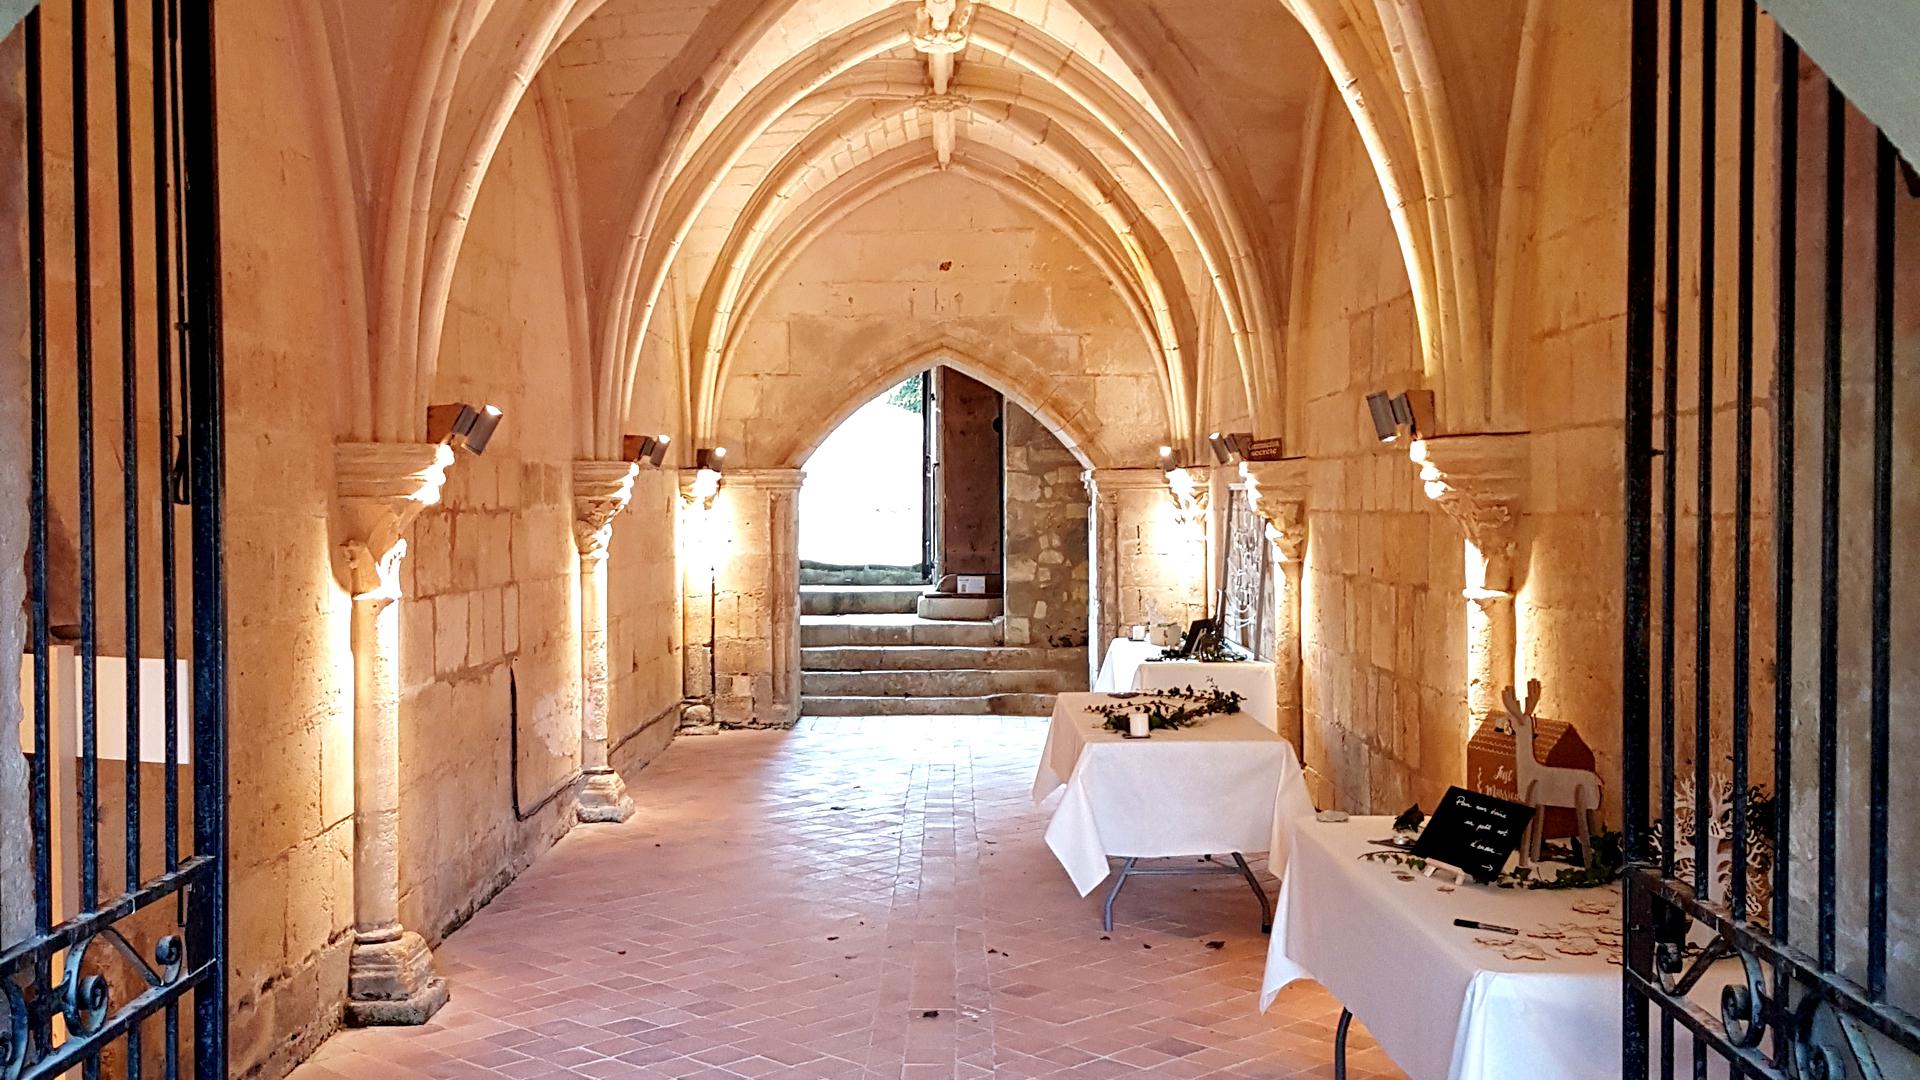 En formule Trio à l'Abbaye de Fontdouce, St-Bris-des-Bois (17), le samedi 23 février 2019 pour un cocktail de mariage.